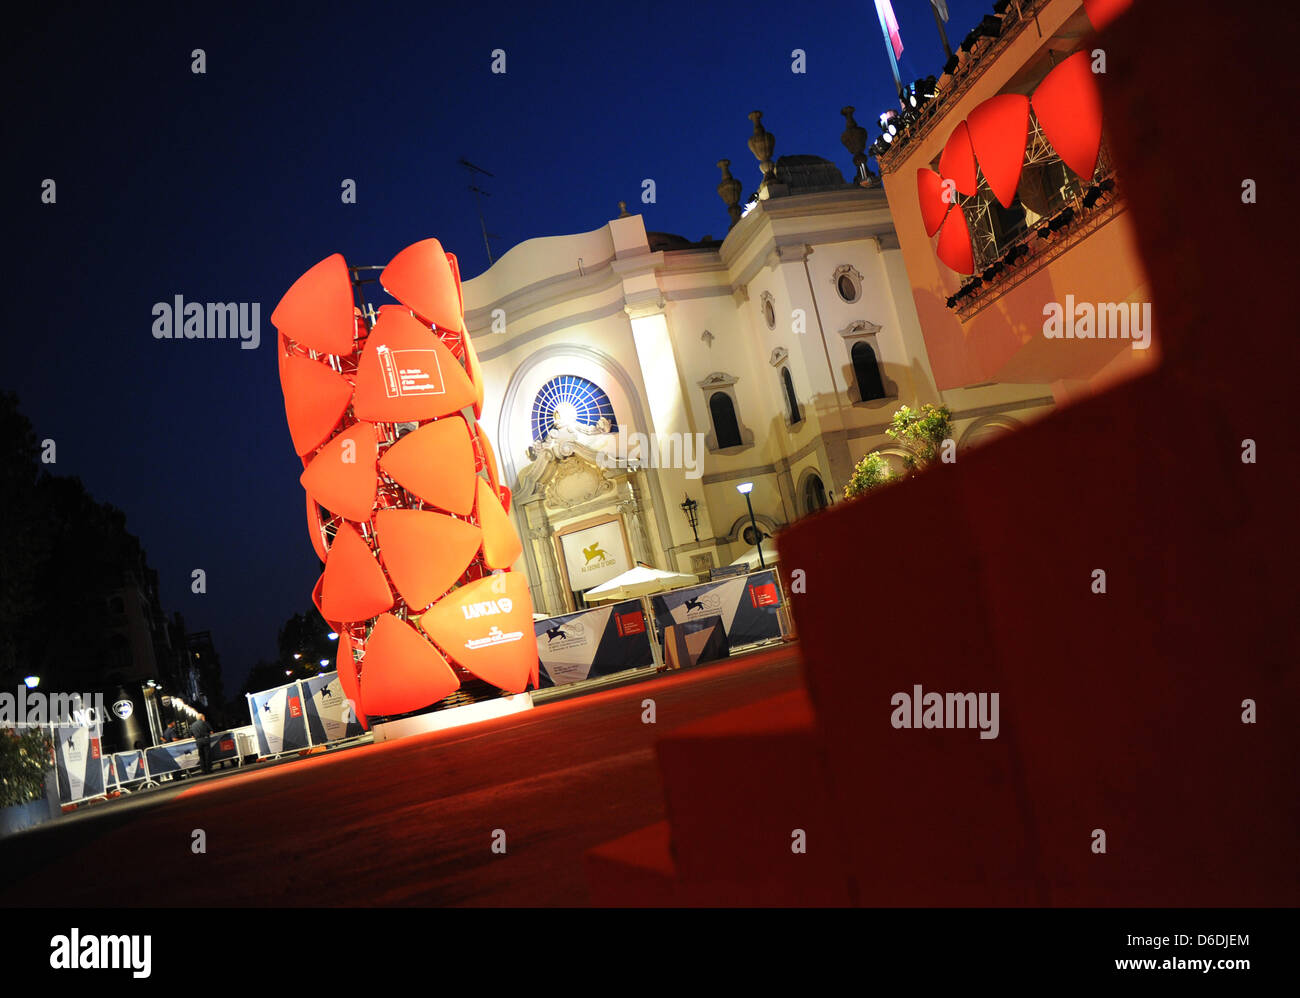 Vista exterior del Palacio del Cine en la noche durante el 69º Festival Internacional de Cine de Venecia en Venecia, Italia, 6 de septiembre de 2012. Foto: Jens Kalaene Foto de stock